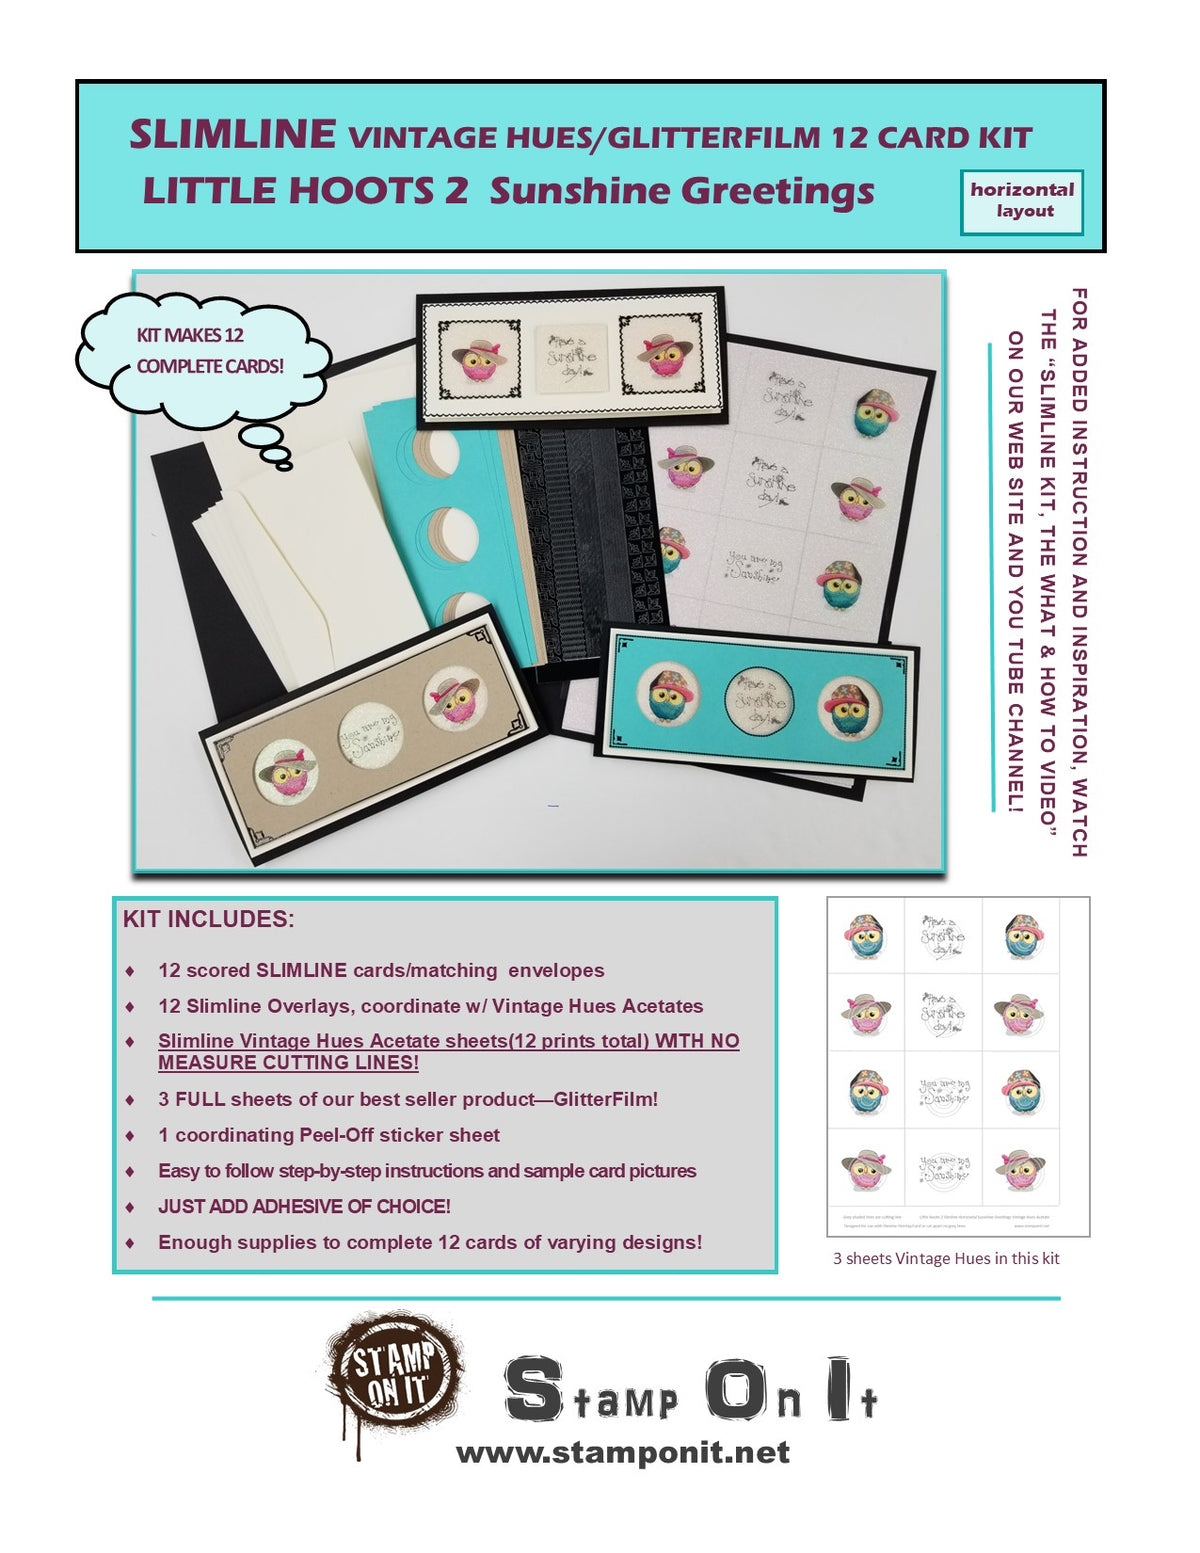 GlitterFilm & Vintage Hues 12 Slimline Card Kit Little Hoots 2 "Sunshine" Greeting